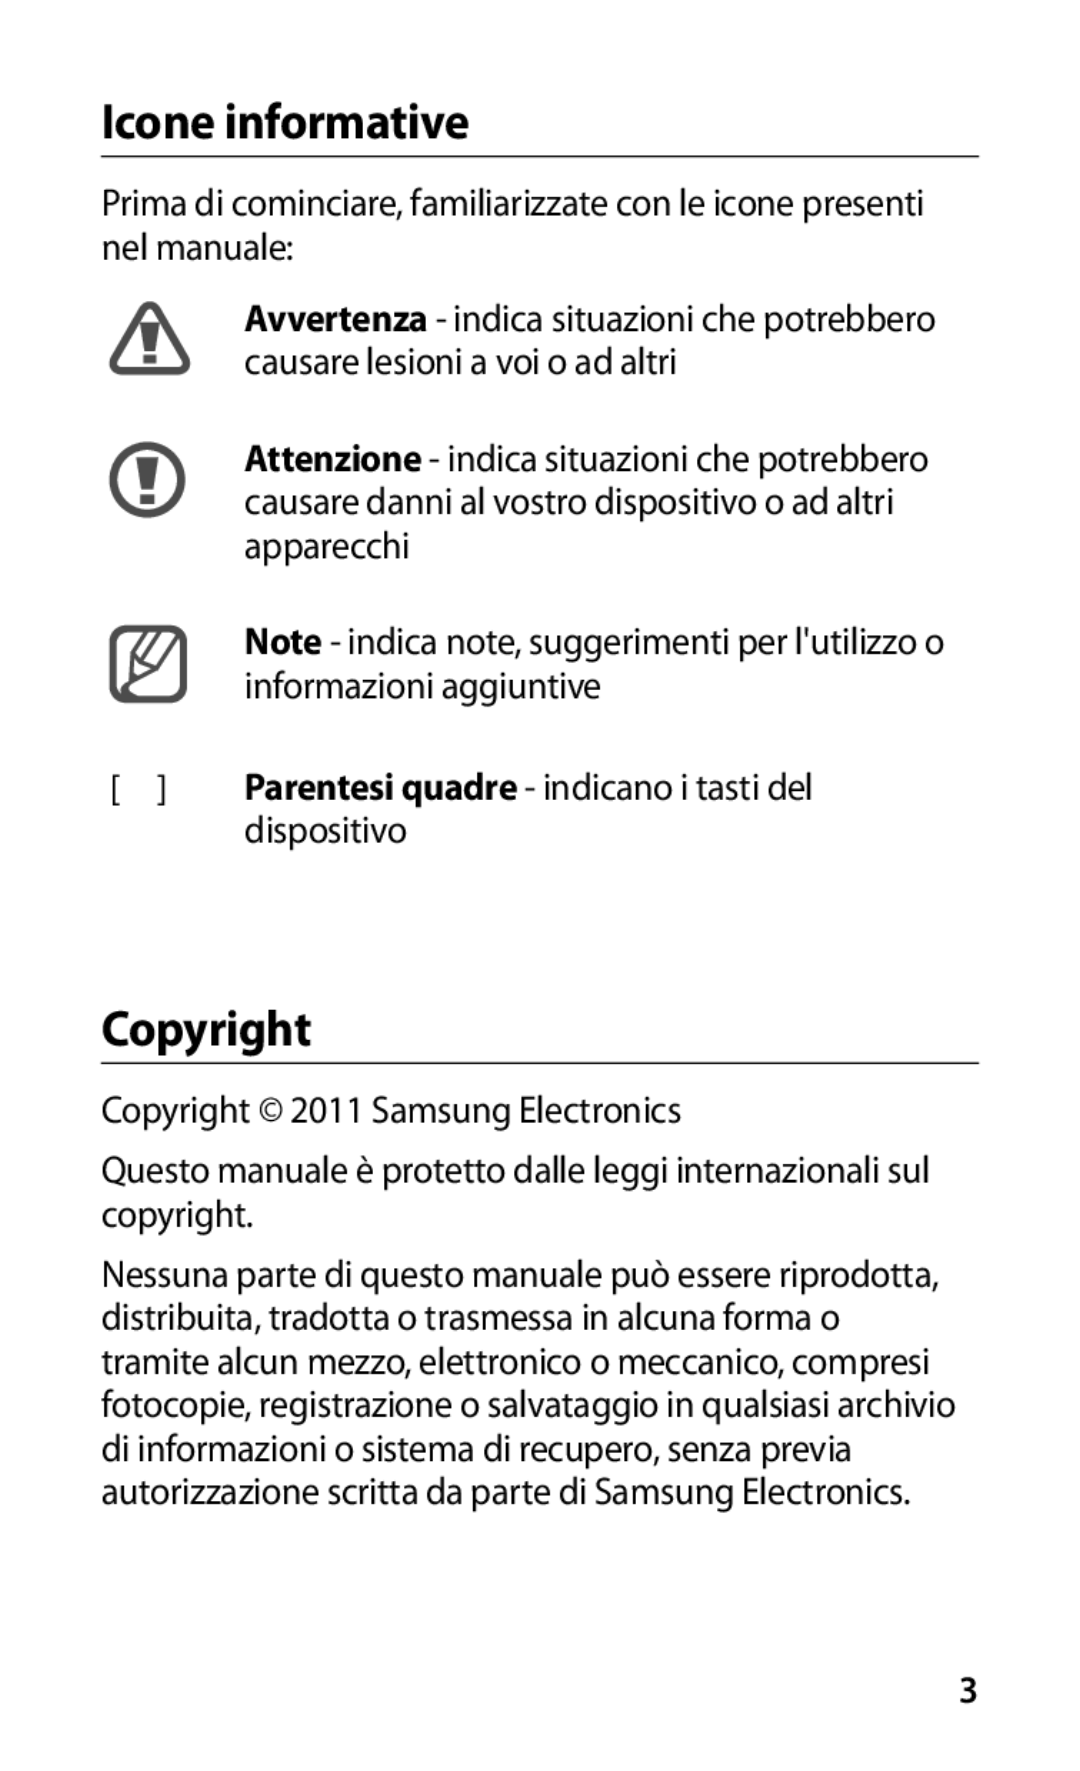 Samsung GT-I9000HKDVIP Icone informative, Copyright, Prima di cominciare, familiarizzate con le icone presenti nel manuale 